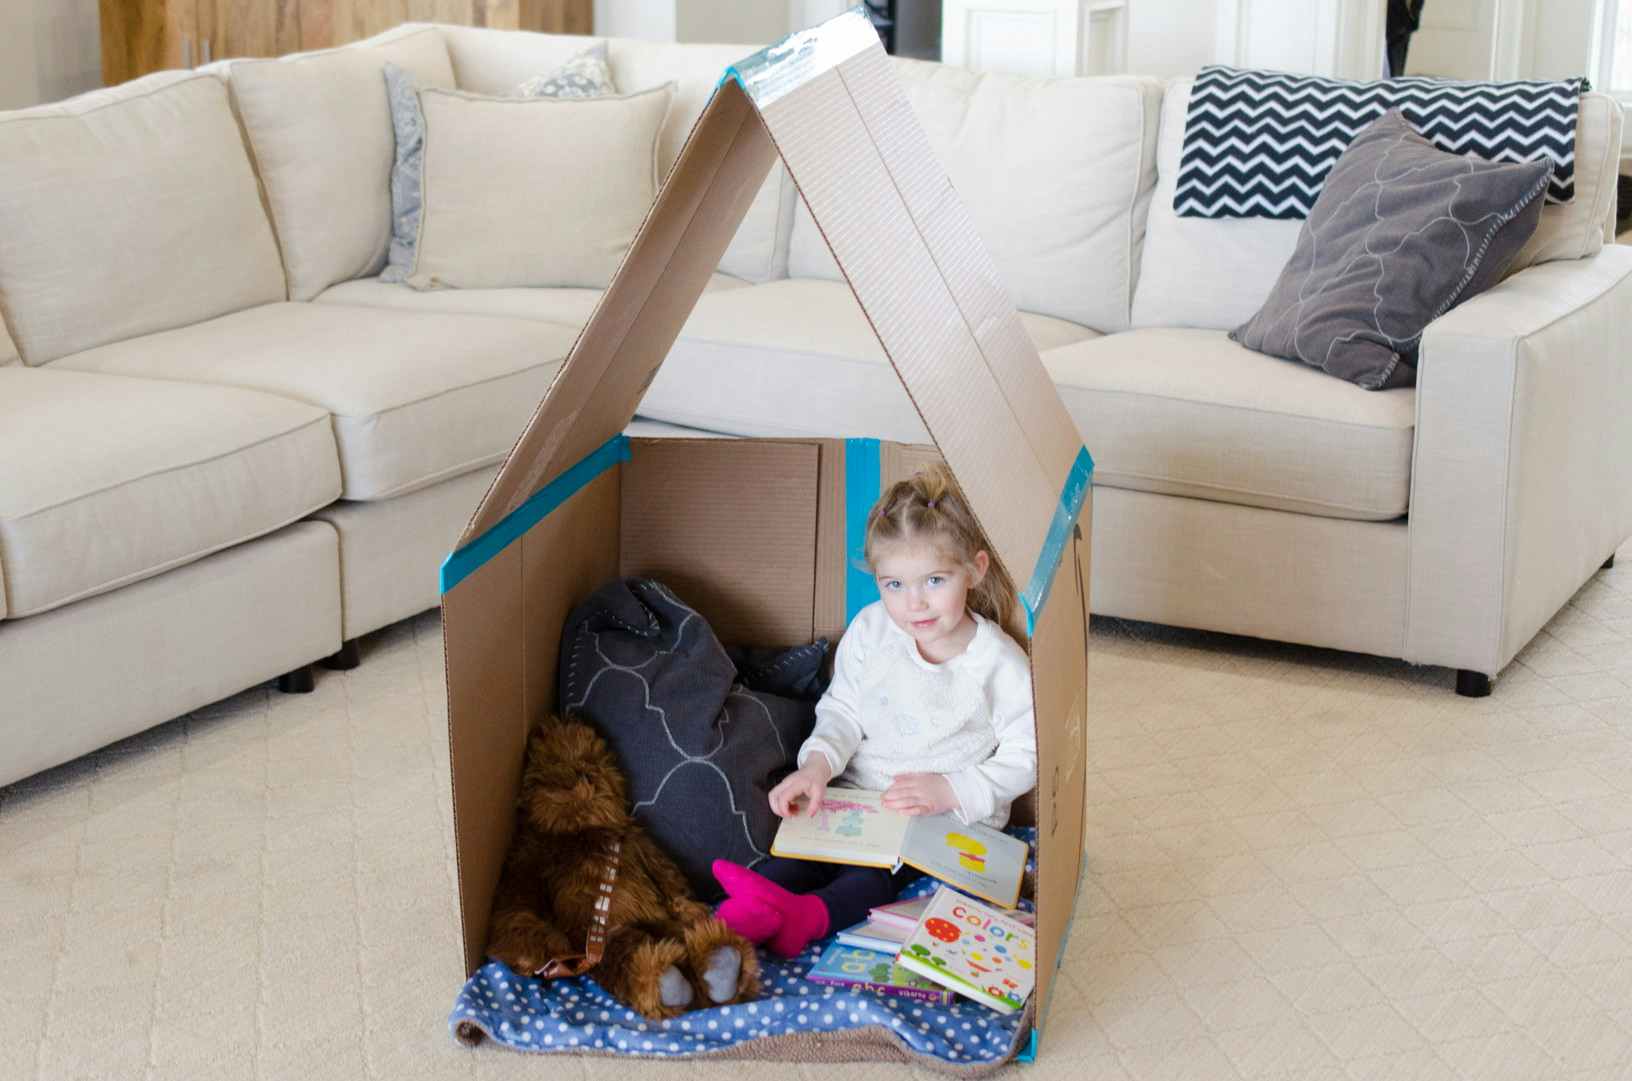 A child sitting inside a cardboard playhouse.